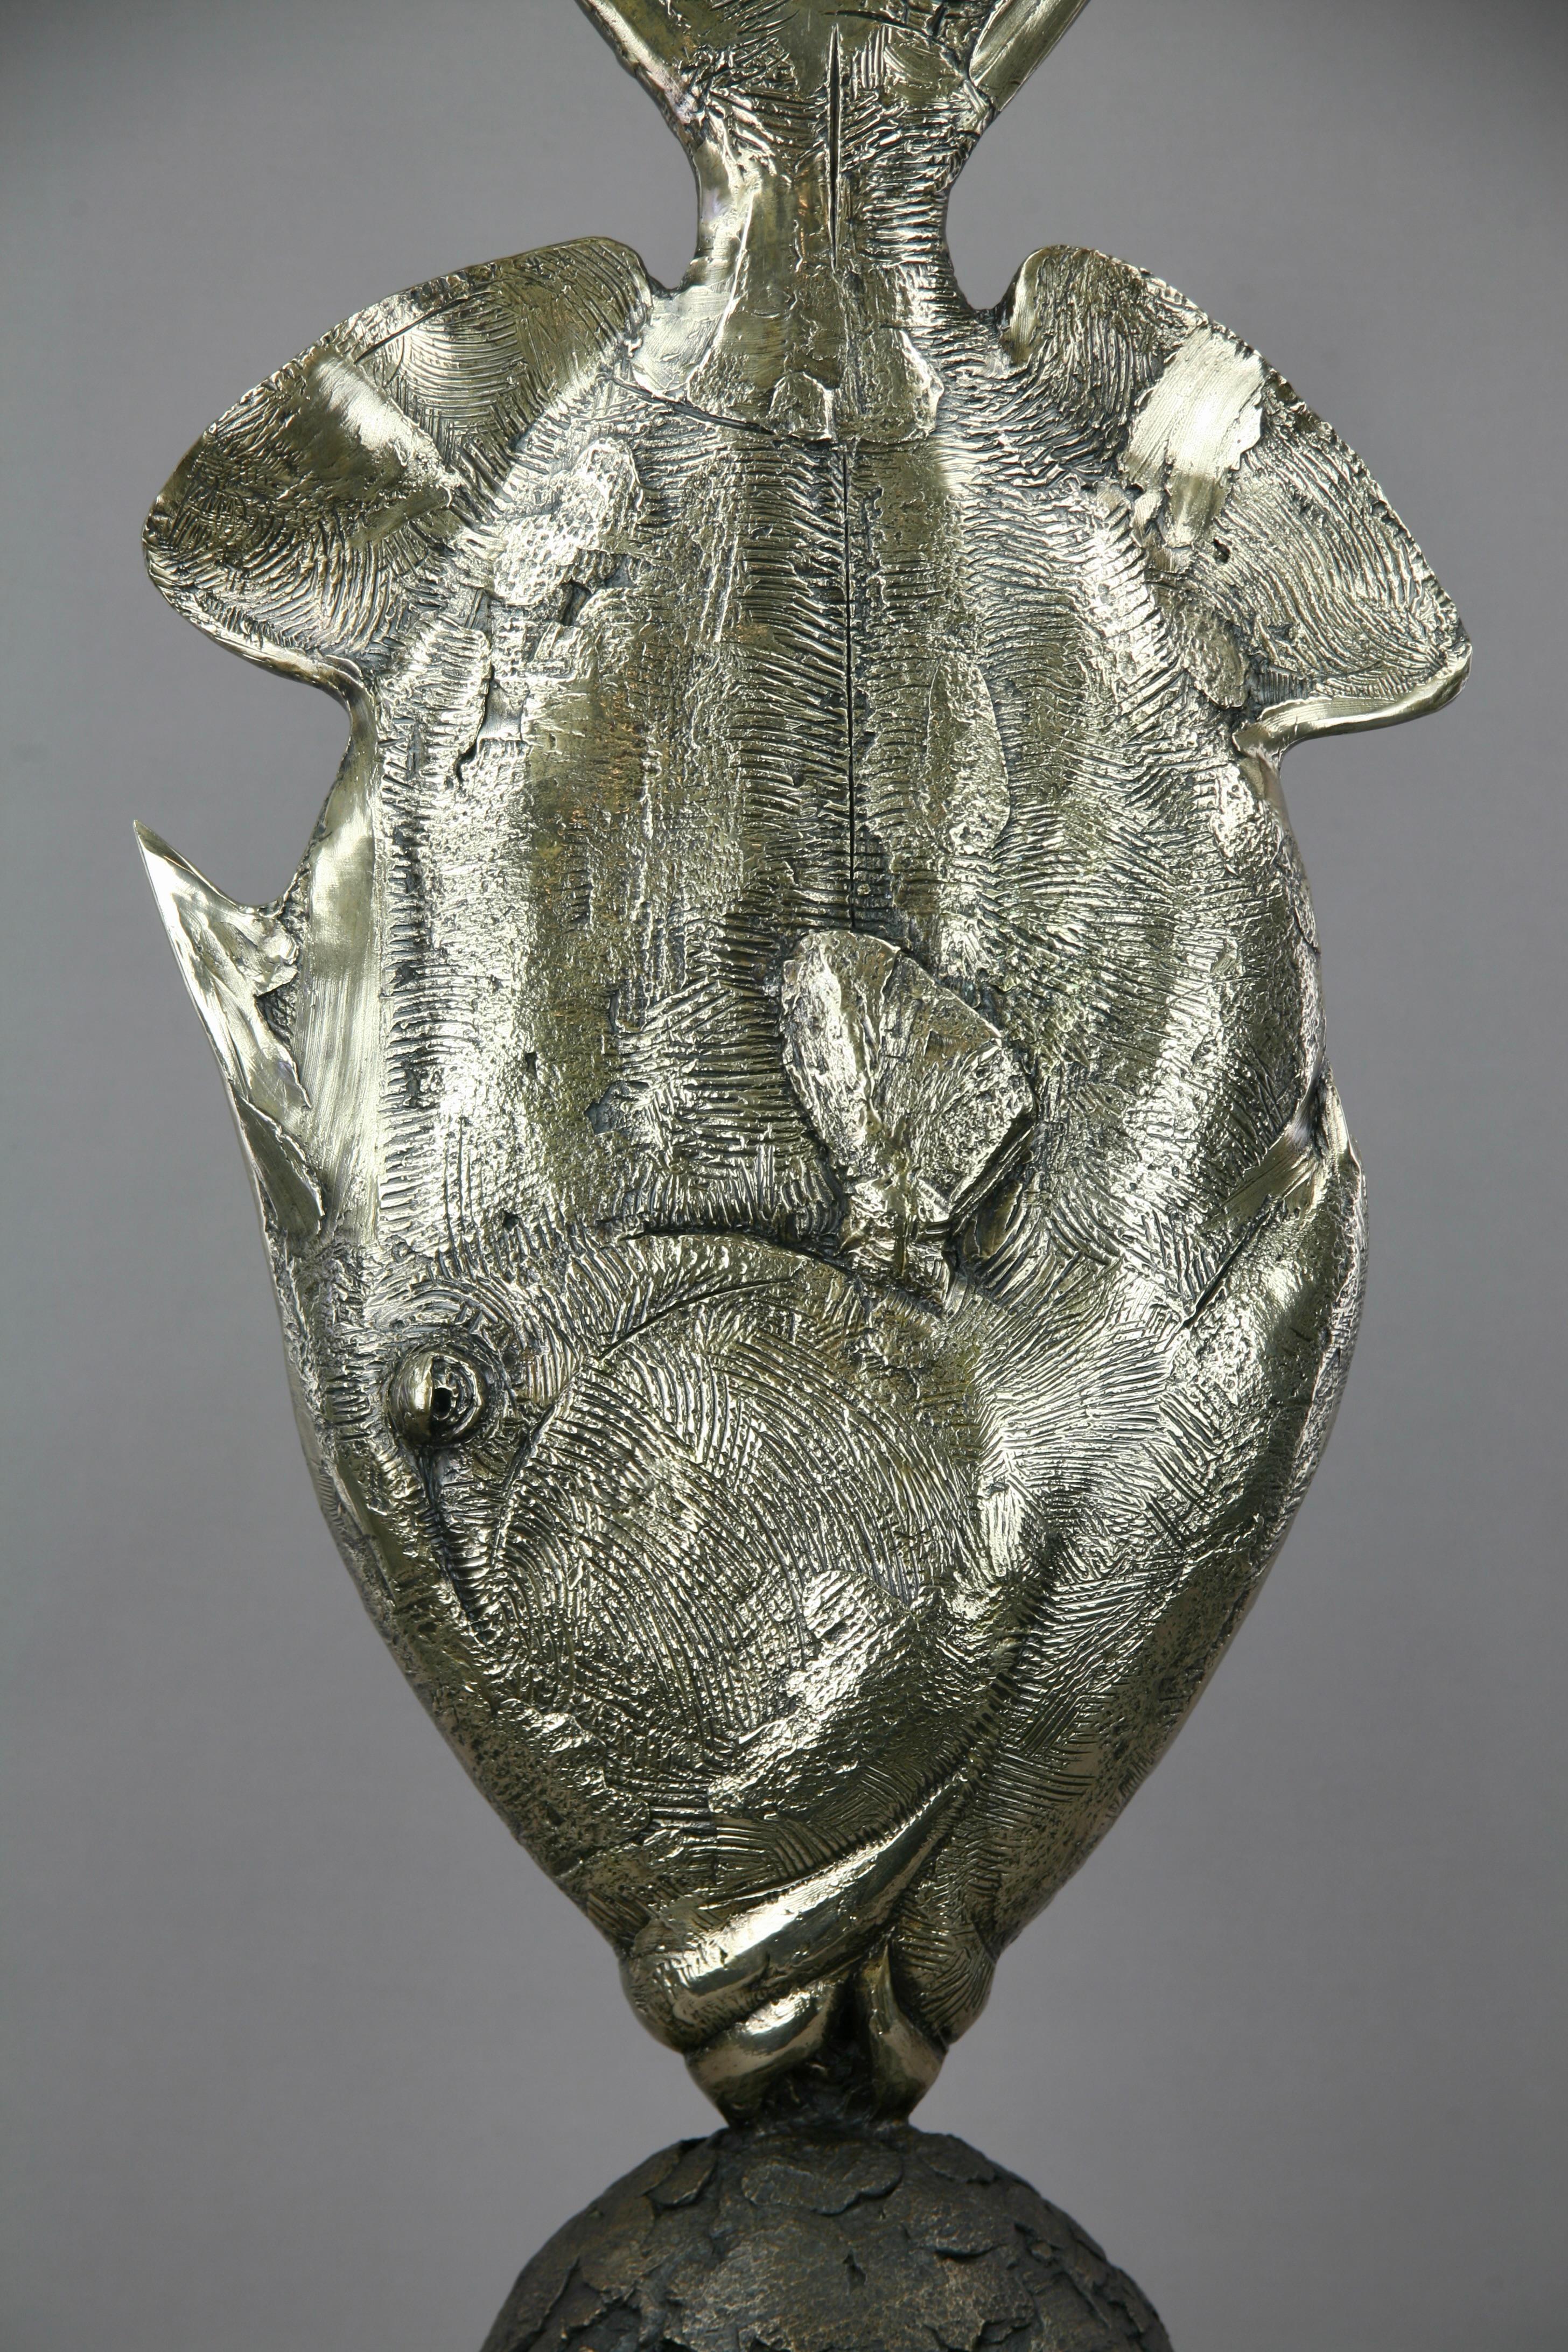 Titan Triggerfish -original bronze marine wildlife sculpture - contemporary Art - Sculpture by Andrzej Szymczyk